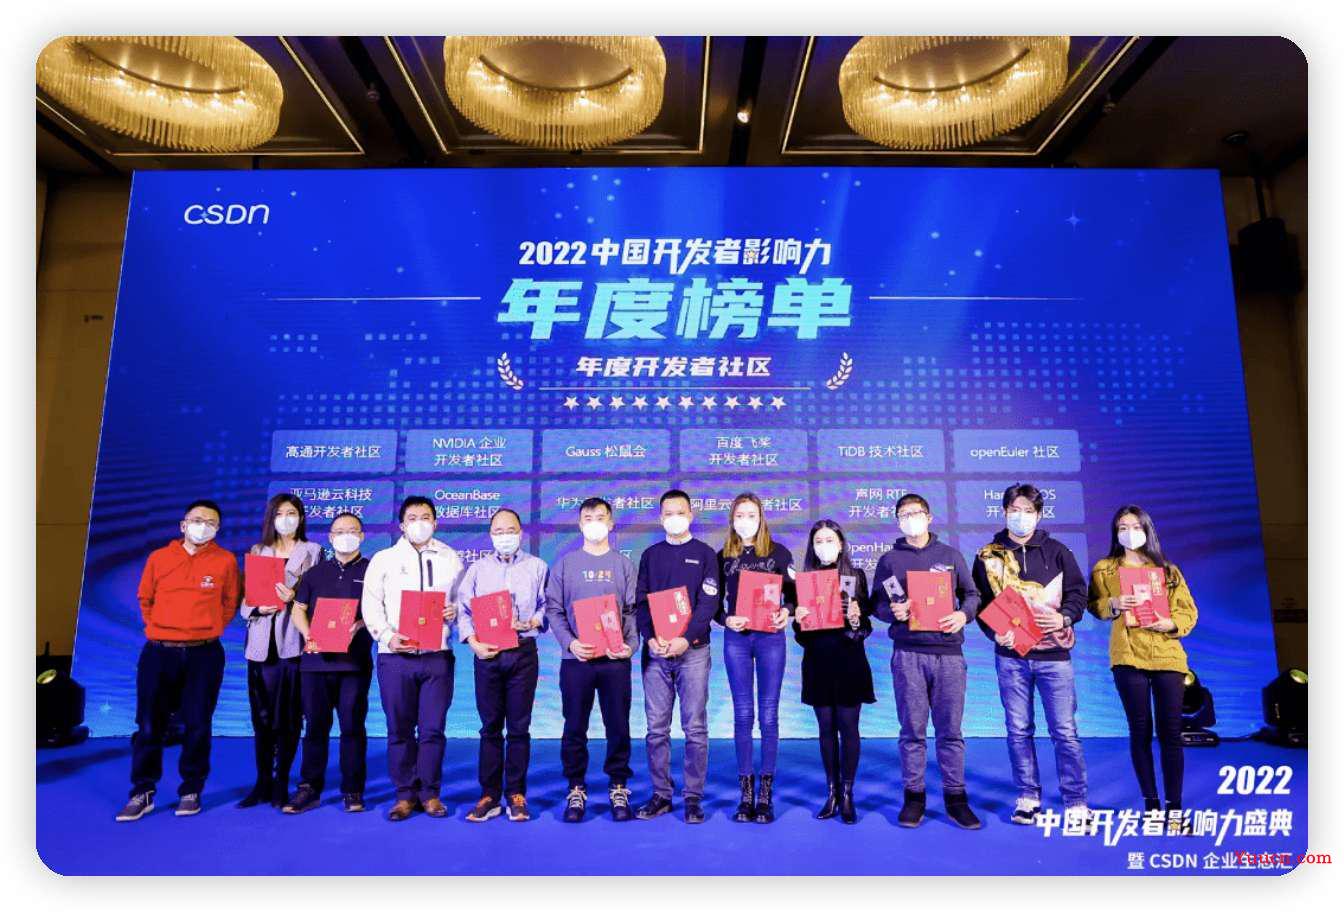 参加《2022 中国开发者影响力盛典》我的 4 重收获！